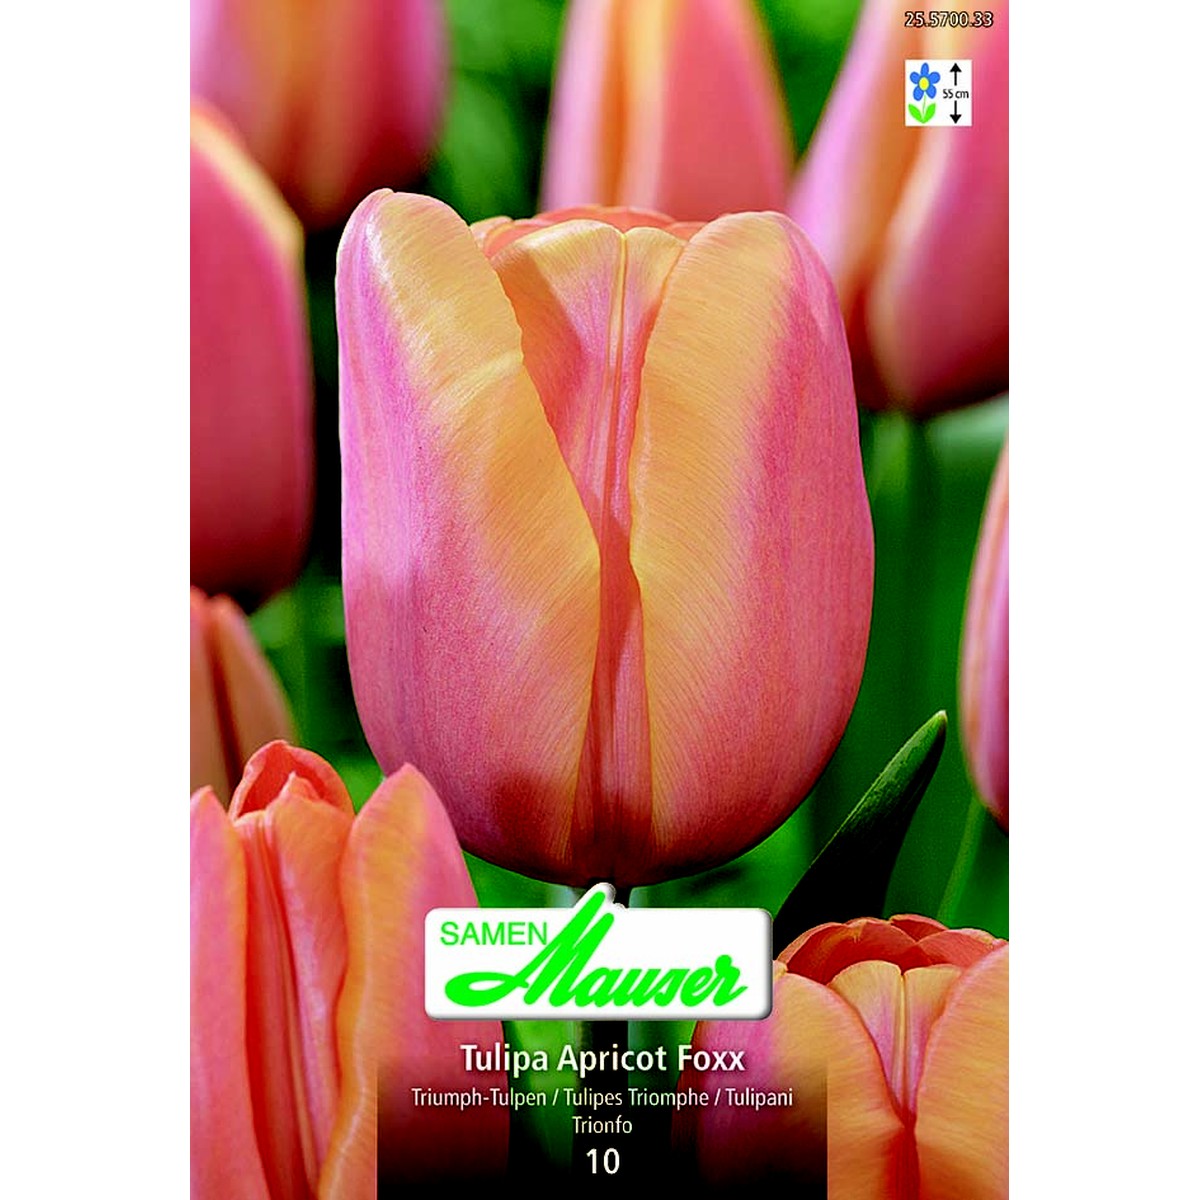   Tulipe TT Apricot Foxx 10  12/